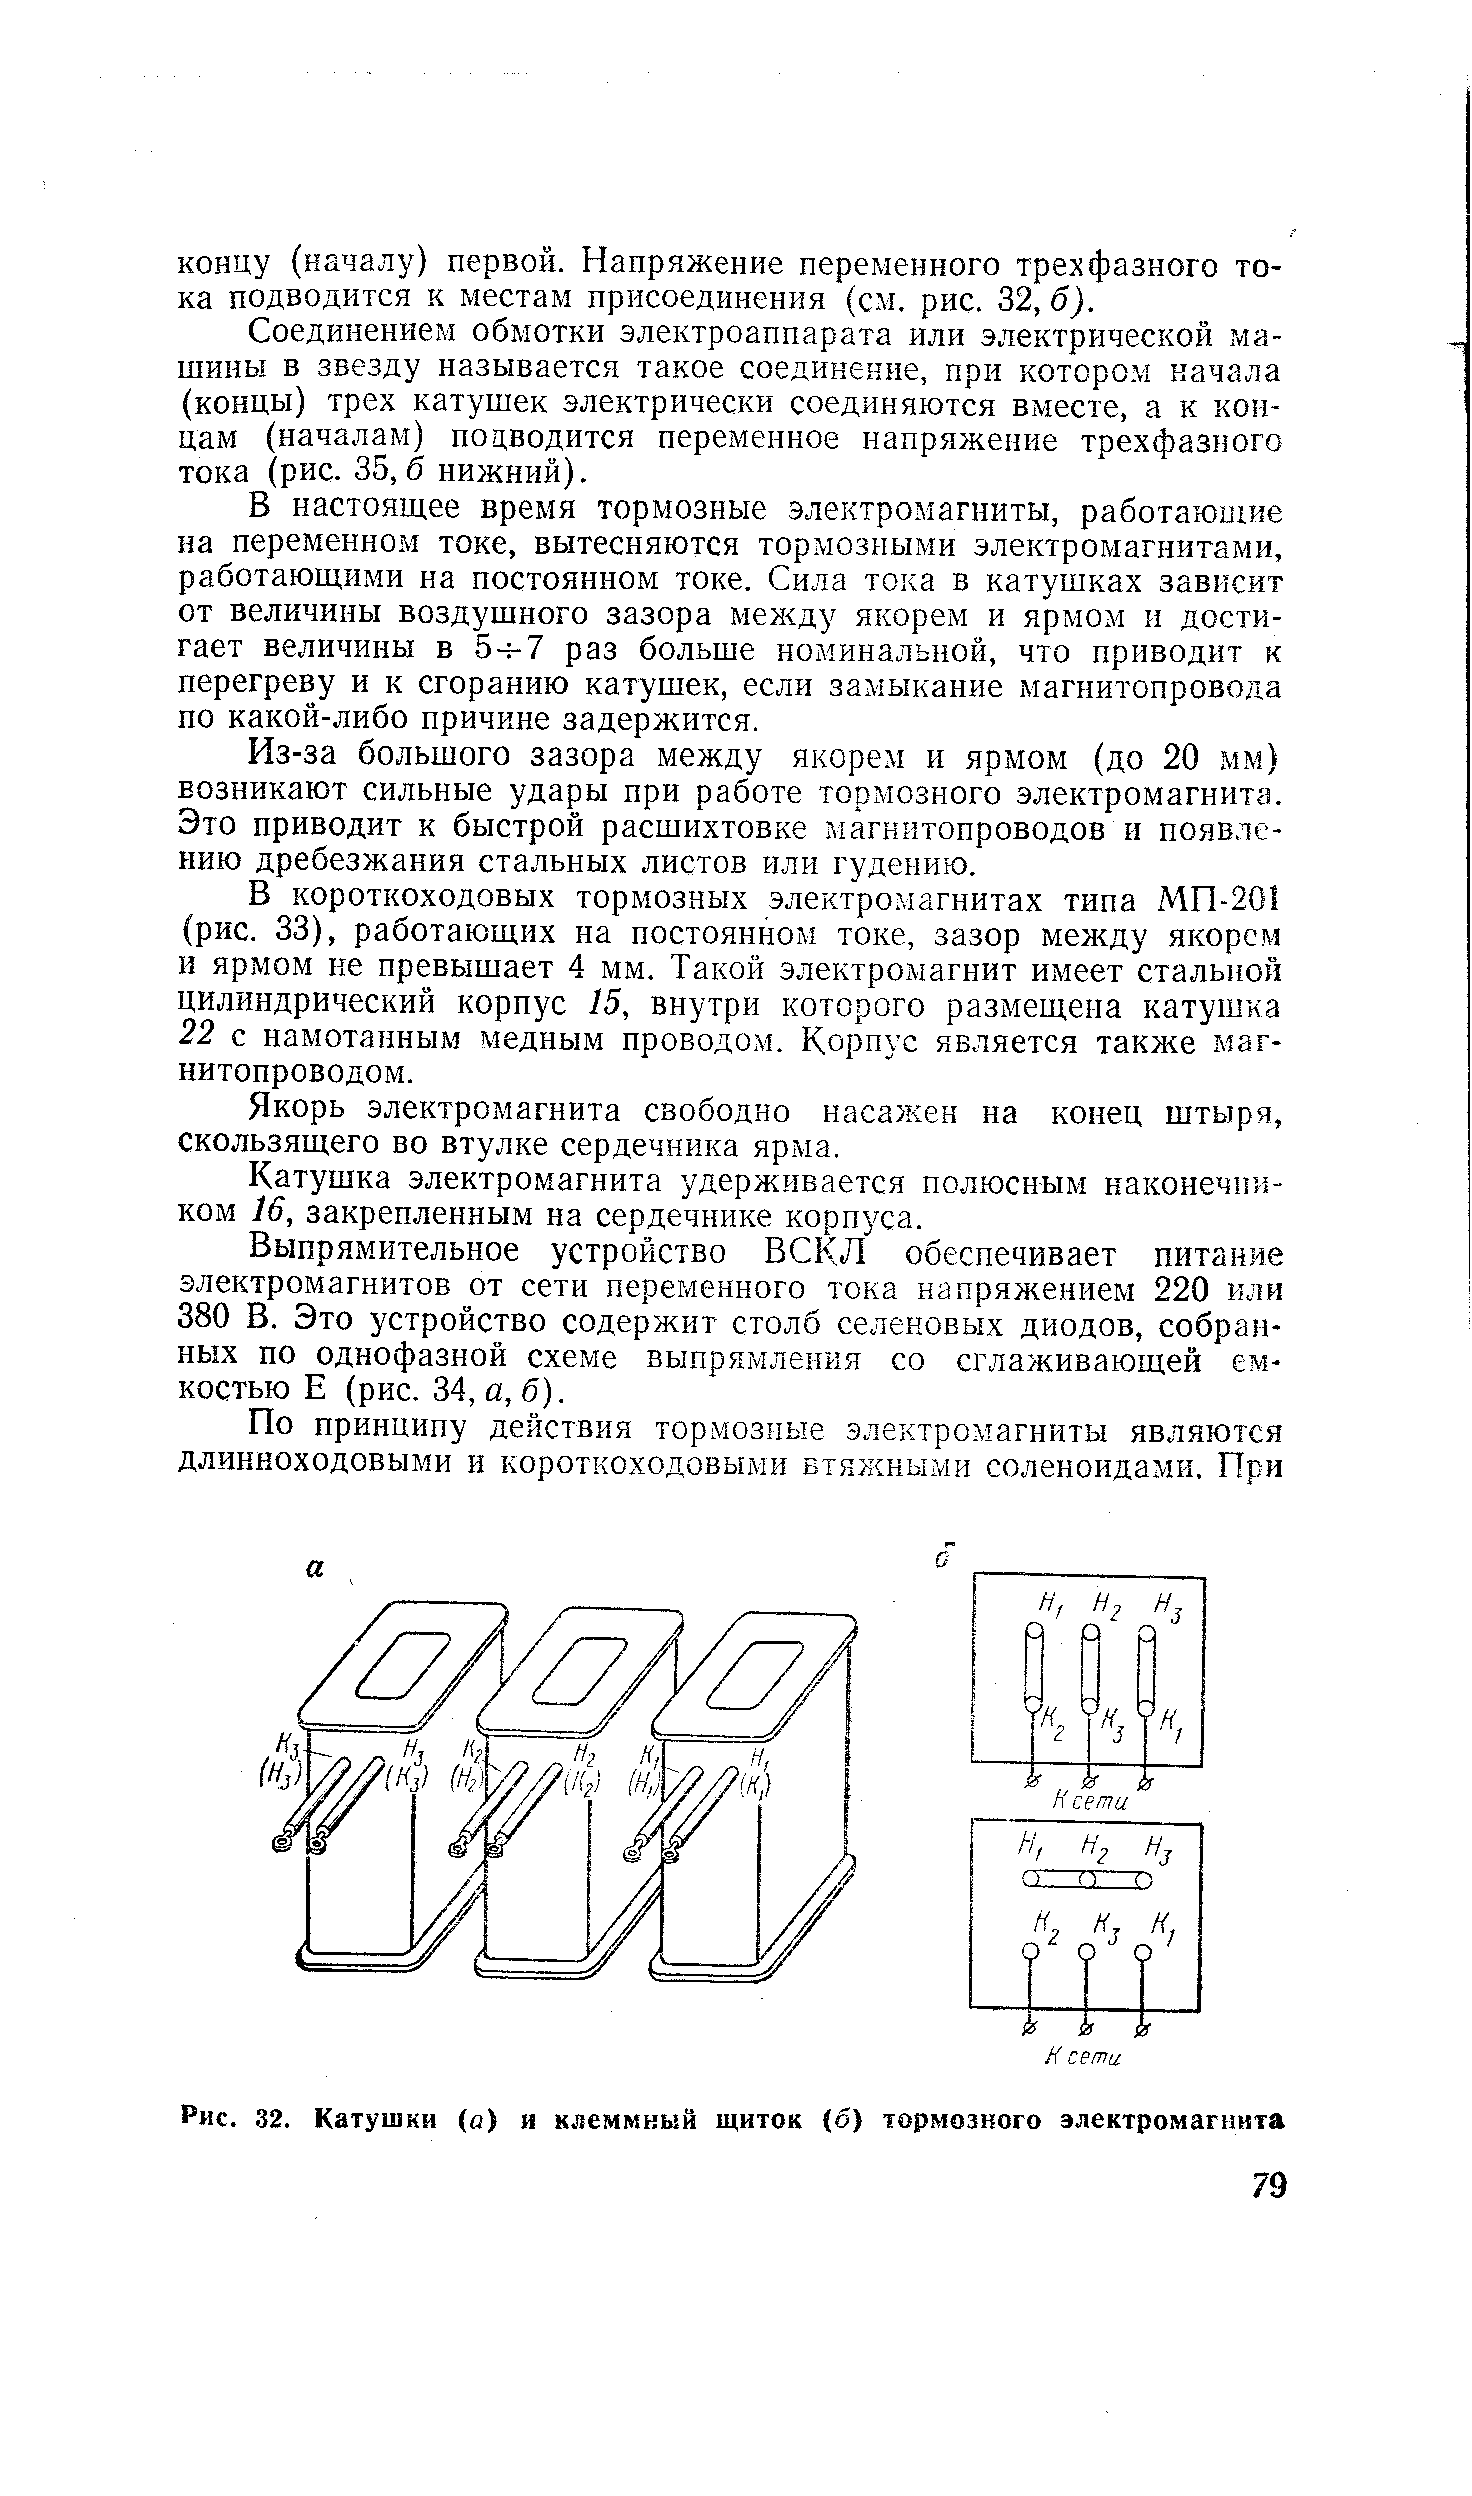 Рис. 32. Катушки (о) и клеммный щиток (б) тормозного электромагнита
